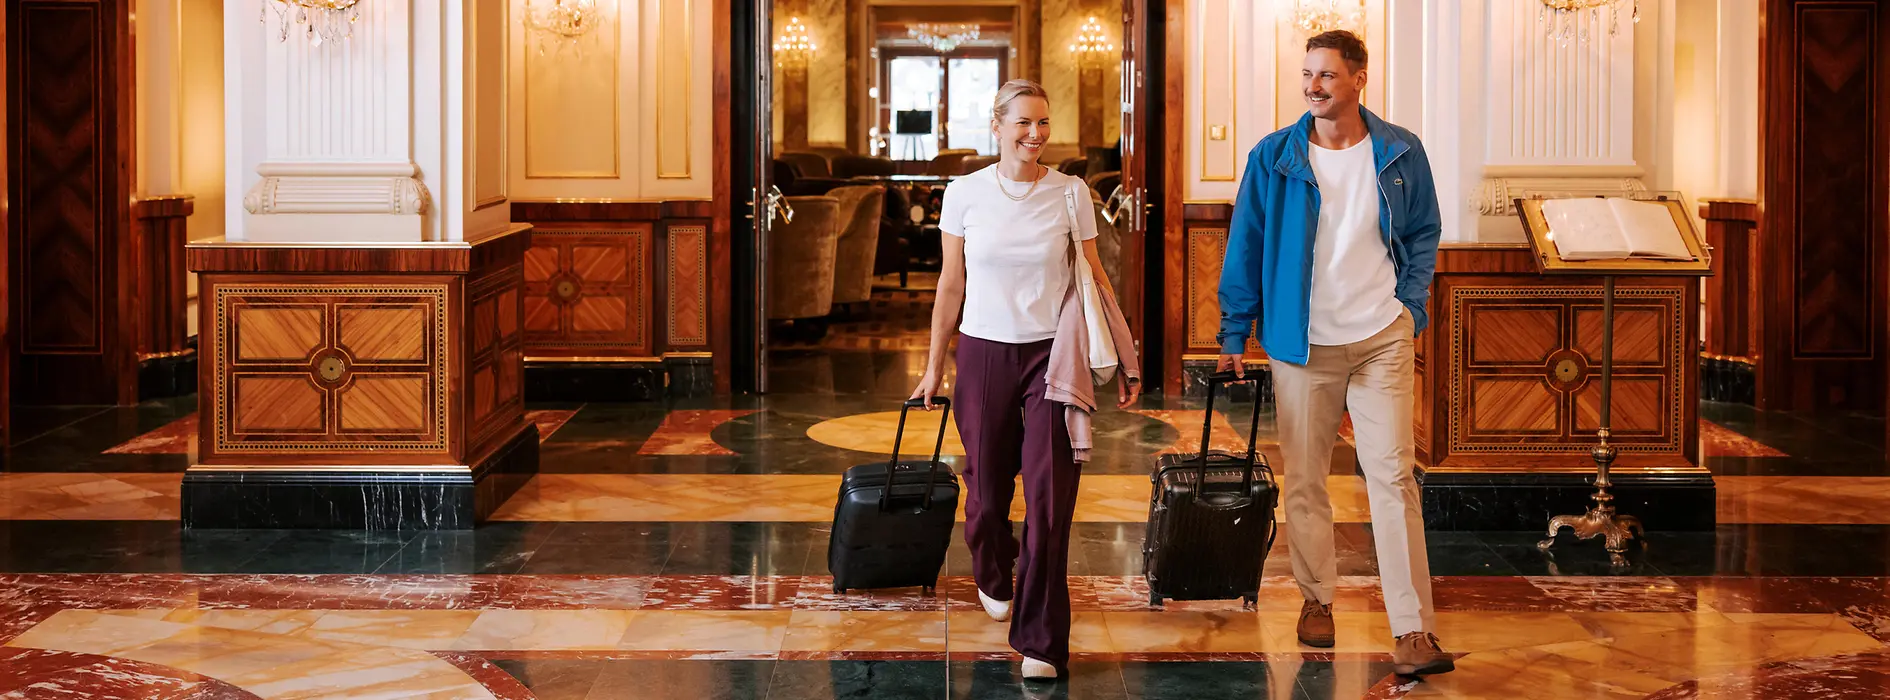 ウィーンのホテルで荷物を持つ2人の女性。